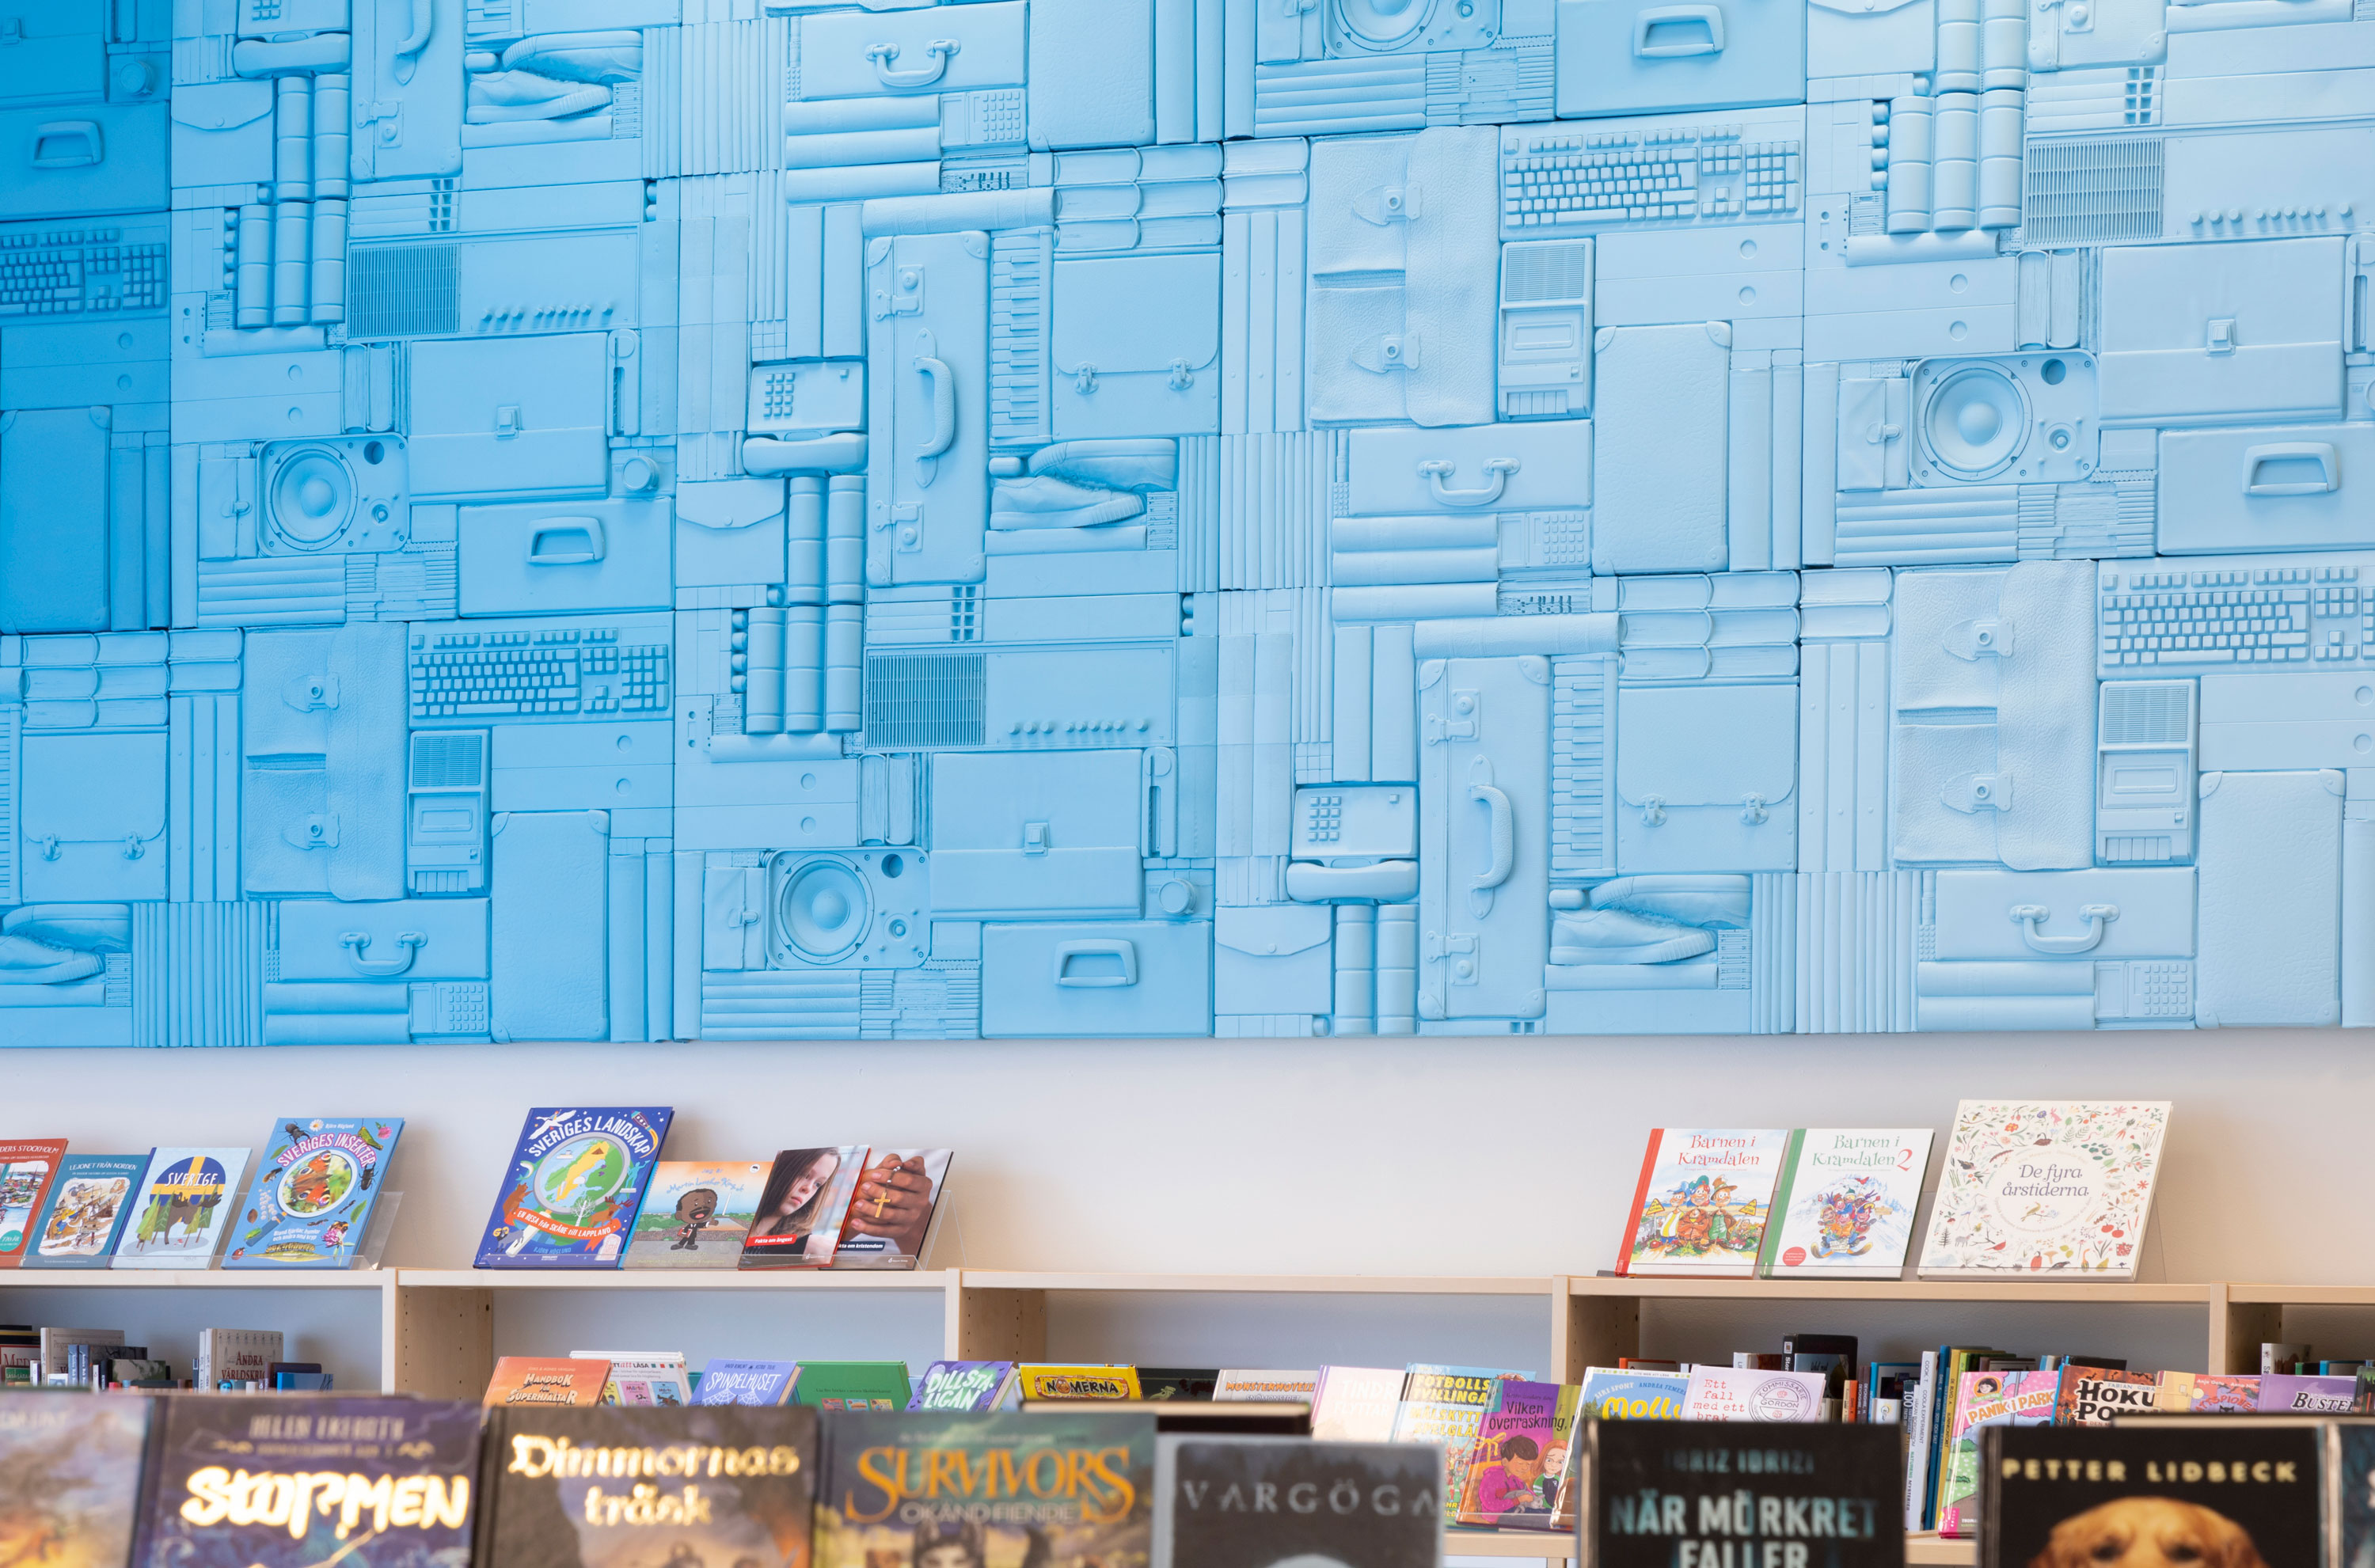 väggrelief i en färgskala från blått till vitt, med ett urval avgjutna föremål som tillsammans utgör ett upprepat mönster som löper längs en vägg